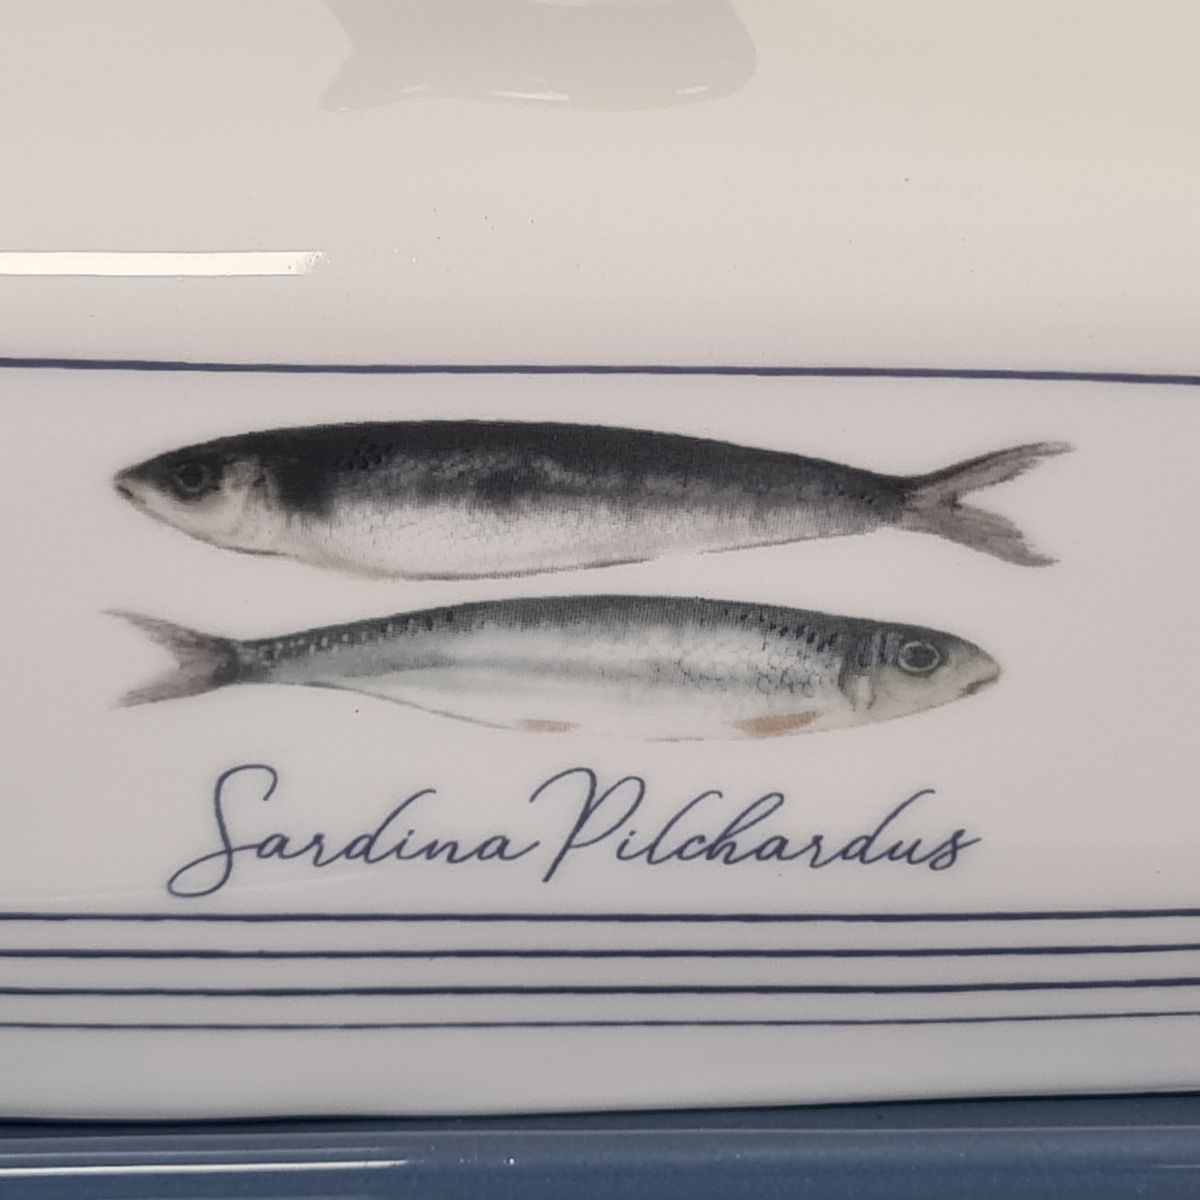 Beurrier en cramique sardina pilchardus